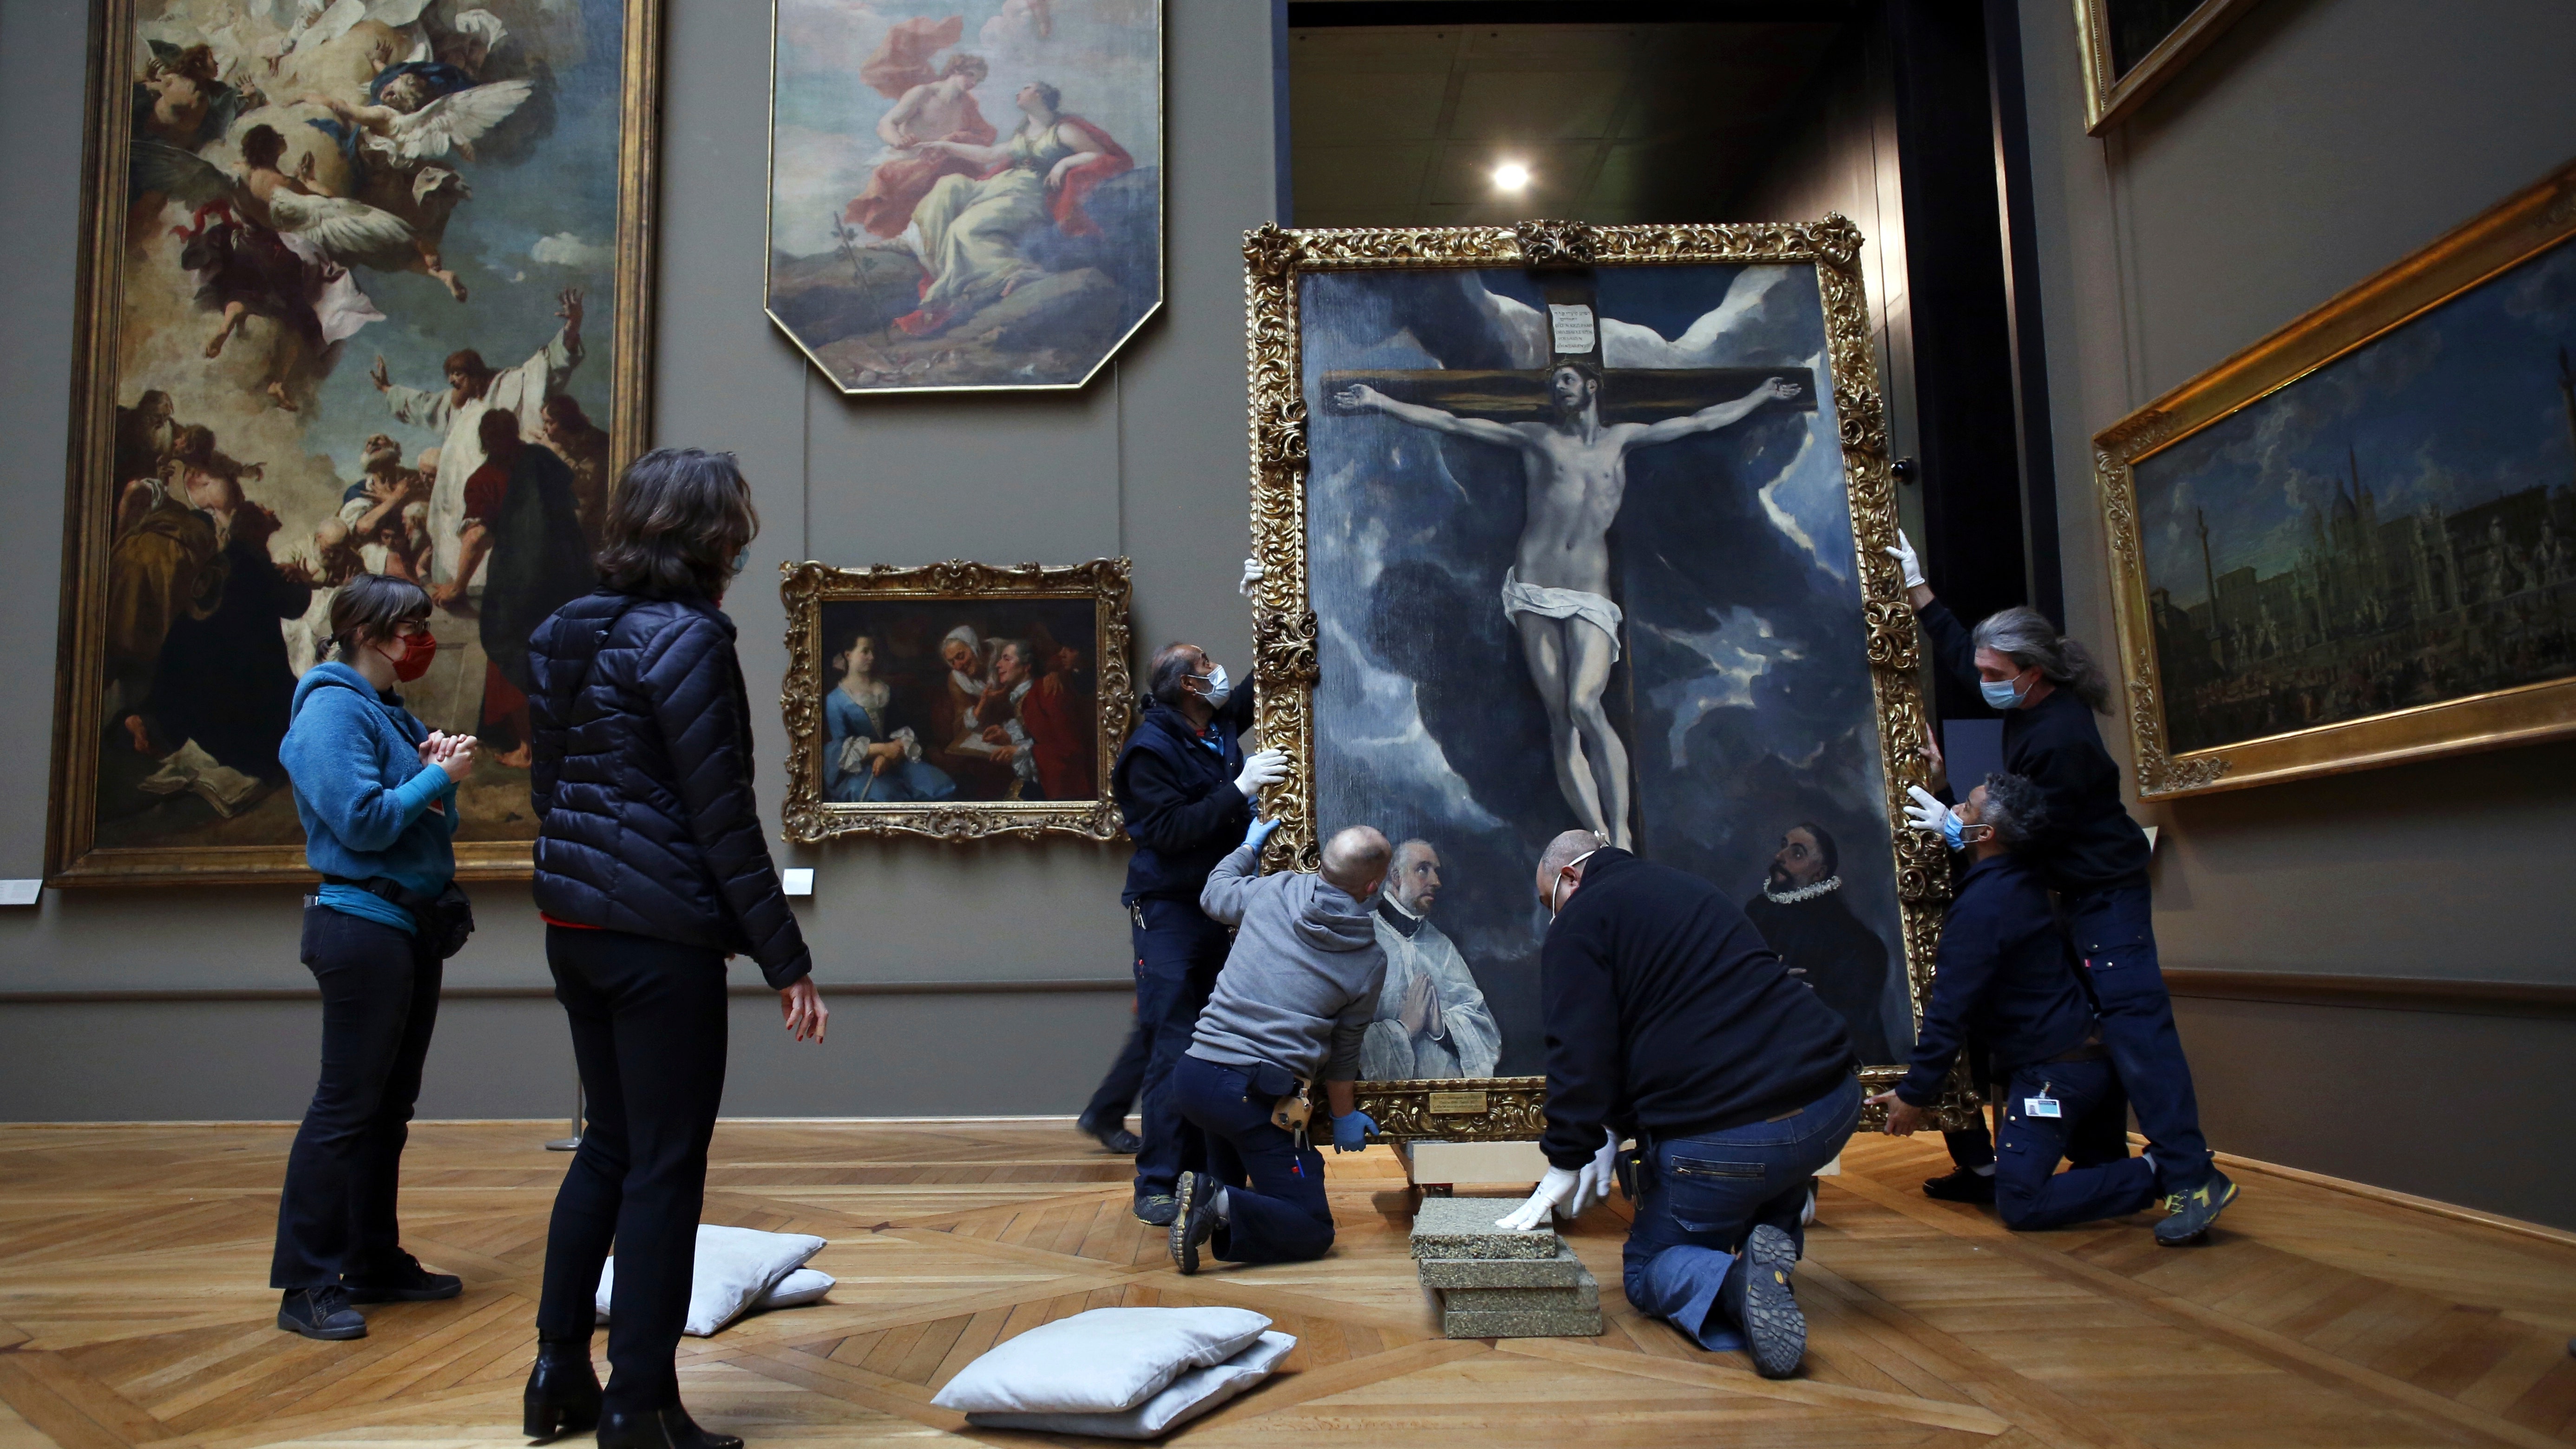 The Louvre undergoing renovations during coronavirus closure